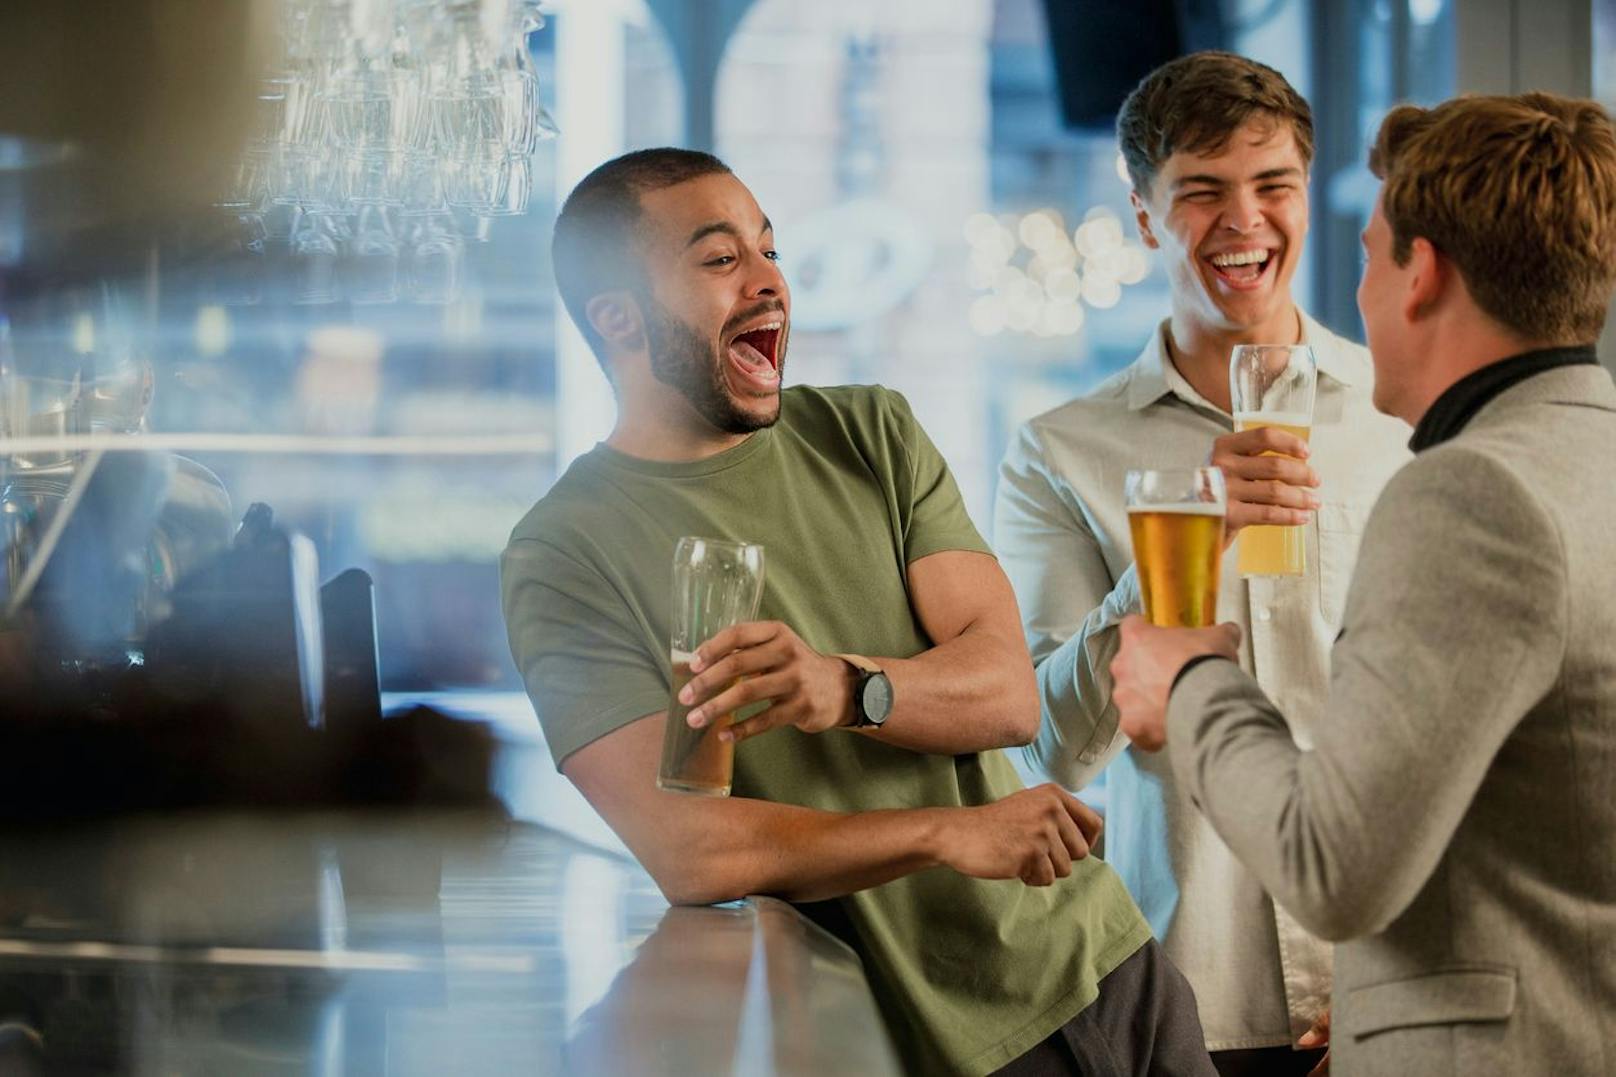 Einige Gläser Alkohol lösen bei Männern öfter Lach-Anfälle aus. Das fanden nun Forscher in einer neuen Studie heraus.